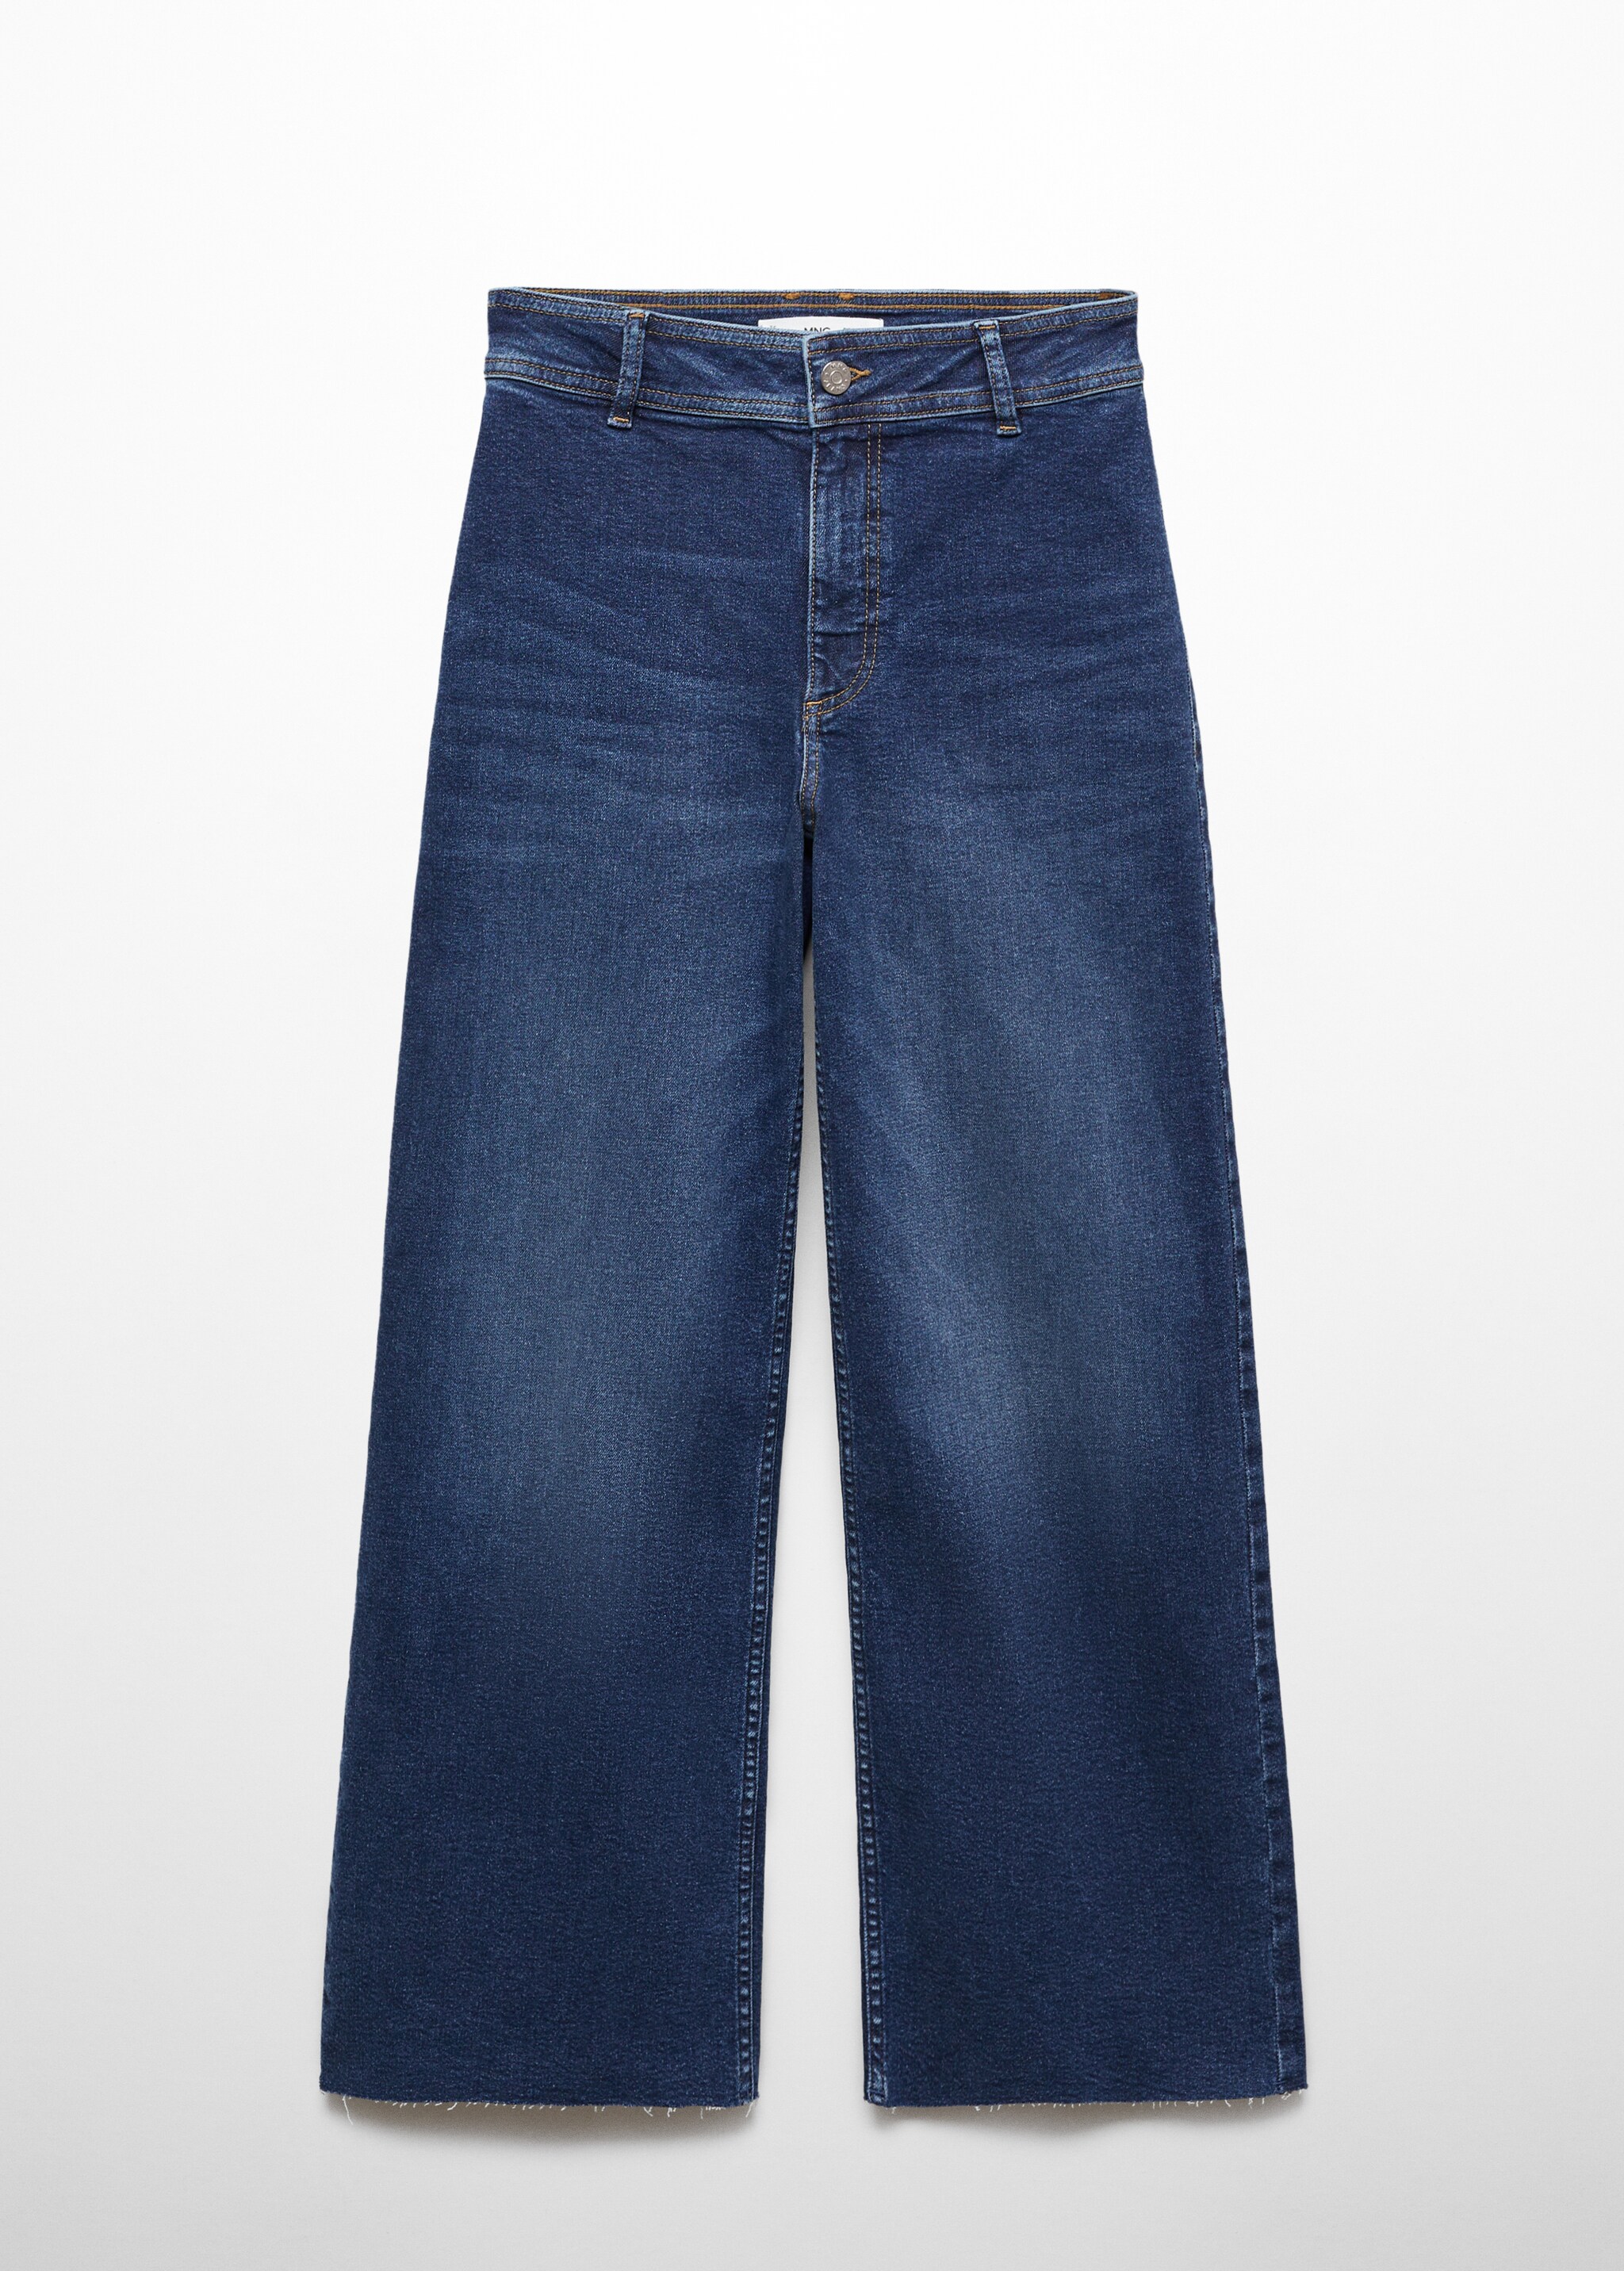 Jeans Catherin culotte tiro alto - Artículo sin modelo